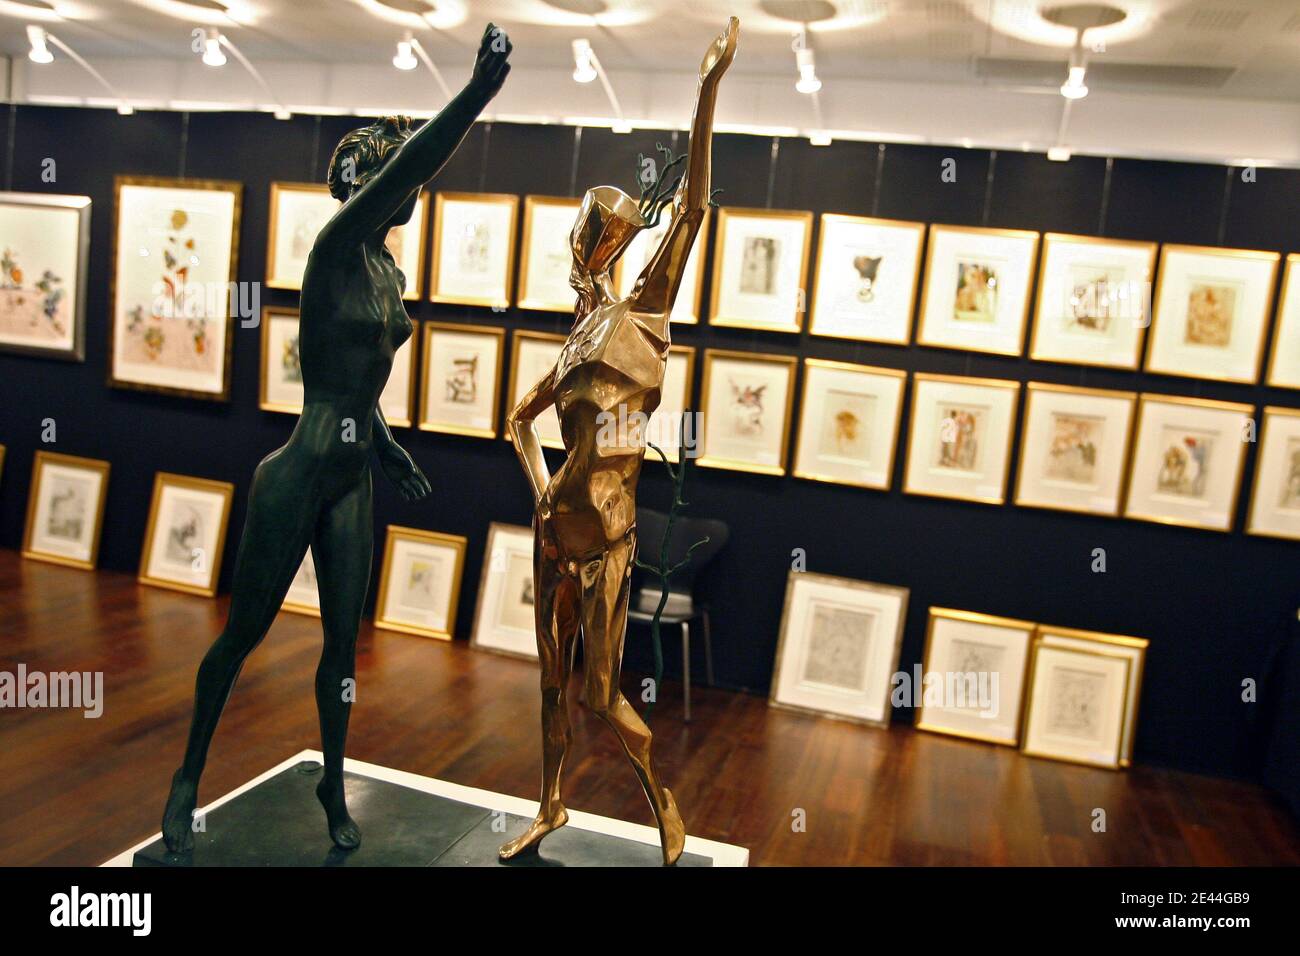 L'exposition est organisée en collaboration avec Francisco Goya et Salvador Dali du 1er mai au 7 juin au Grand Palais de Lille, dans le Nord de la France, le 4 mai 2009. L'occasion de découvrir les destins parallèles de ces deux artistes, que tous les sépare, que tous les b Banque D'Images